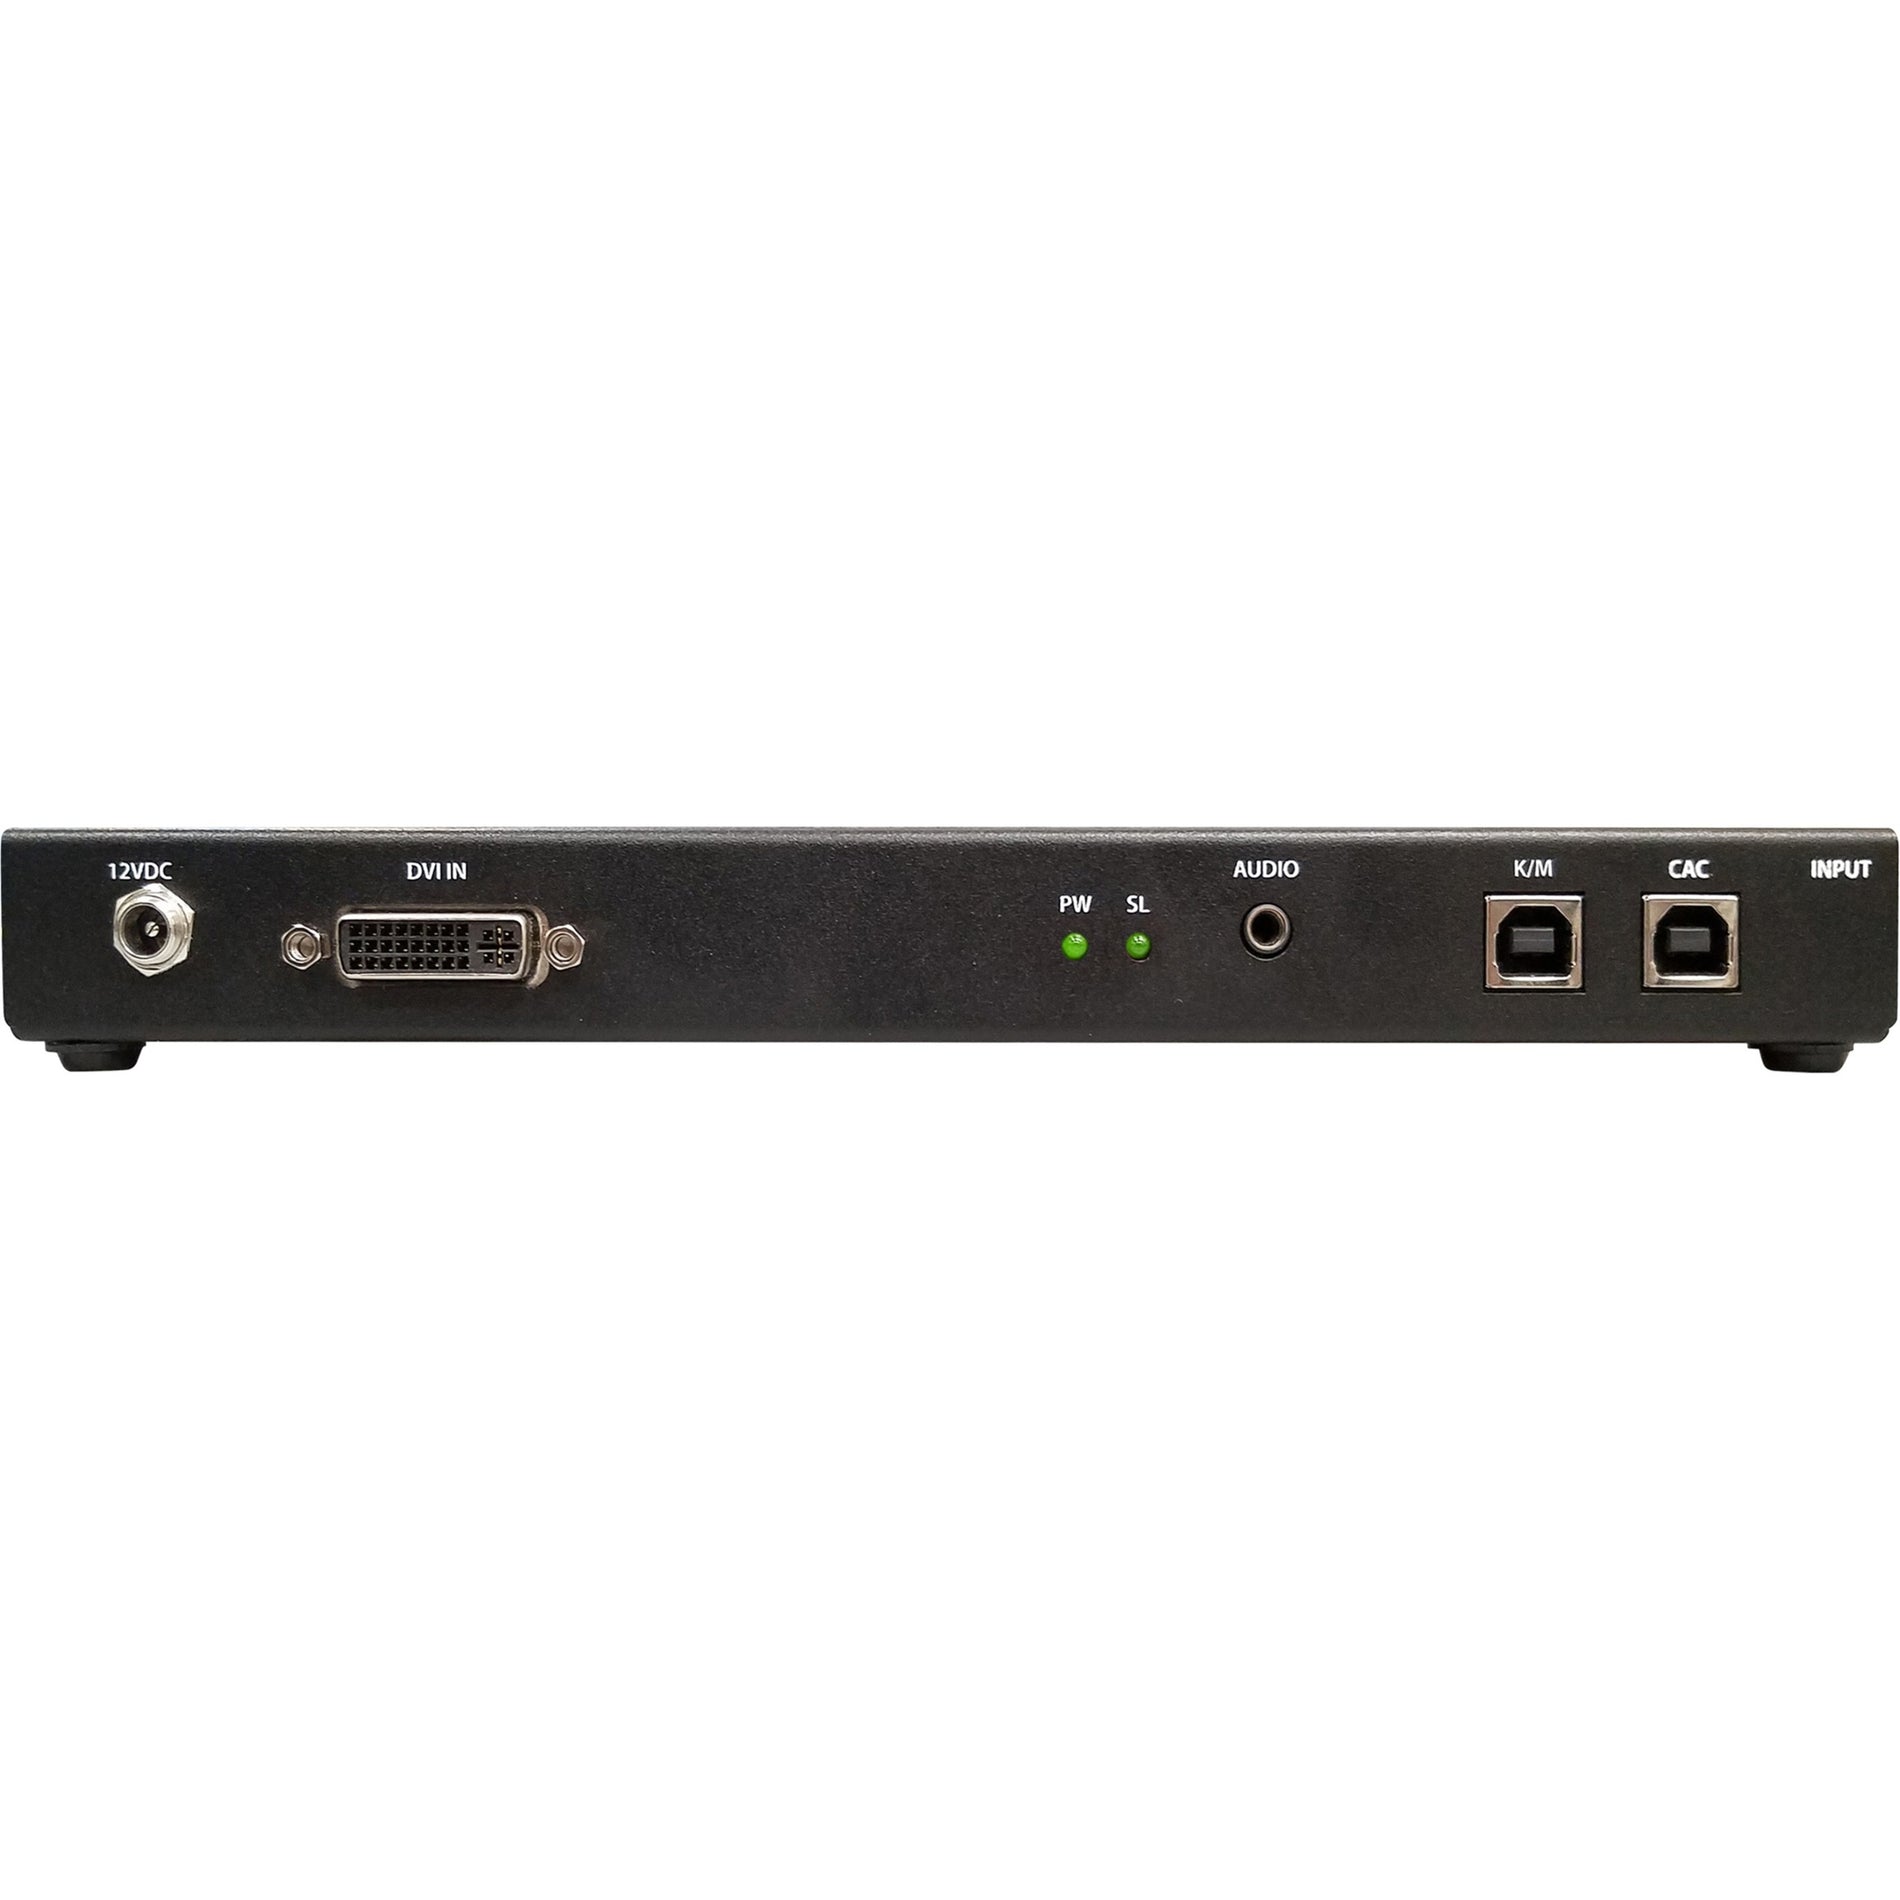 Black Box KVS4-8001DX Secure KVM Peripheral Defender - DVI-I, CAC, 2560 x 1600, 2 DVI Ports, 5 USB Ports